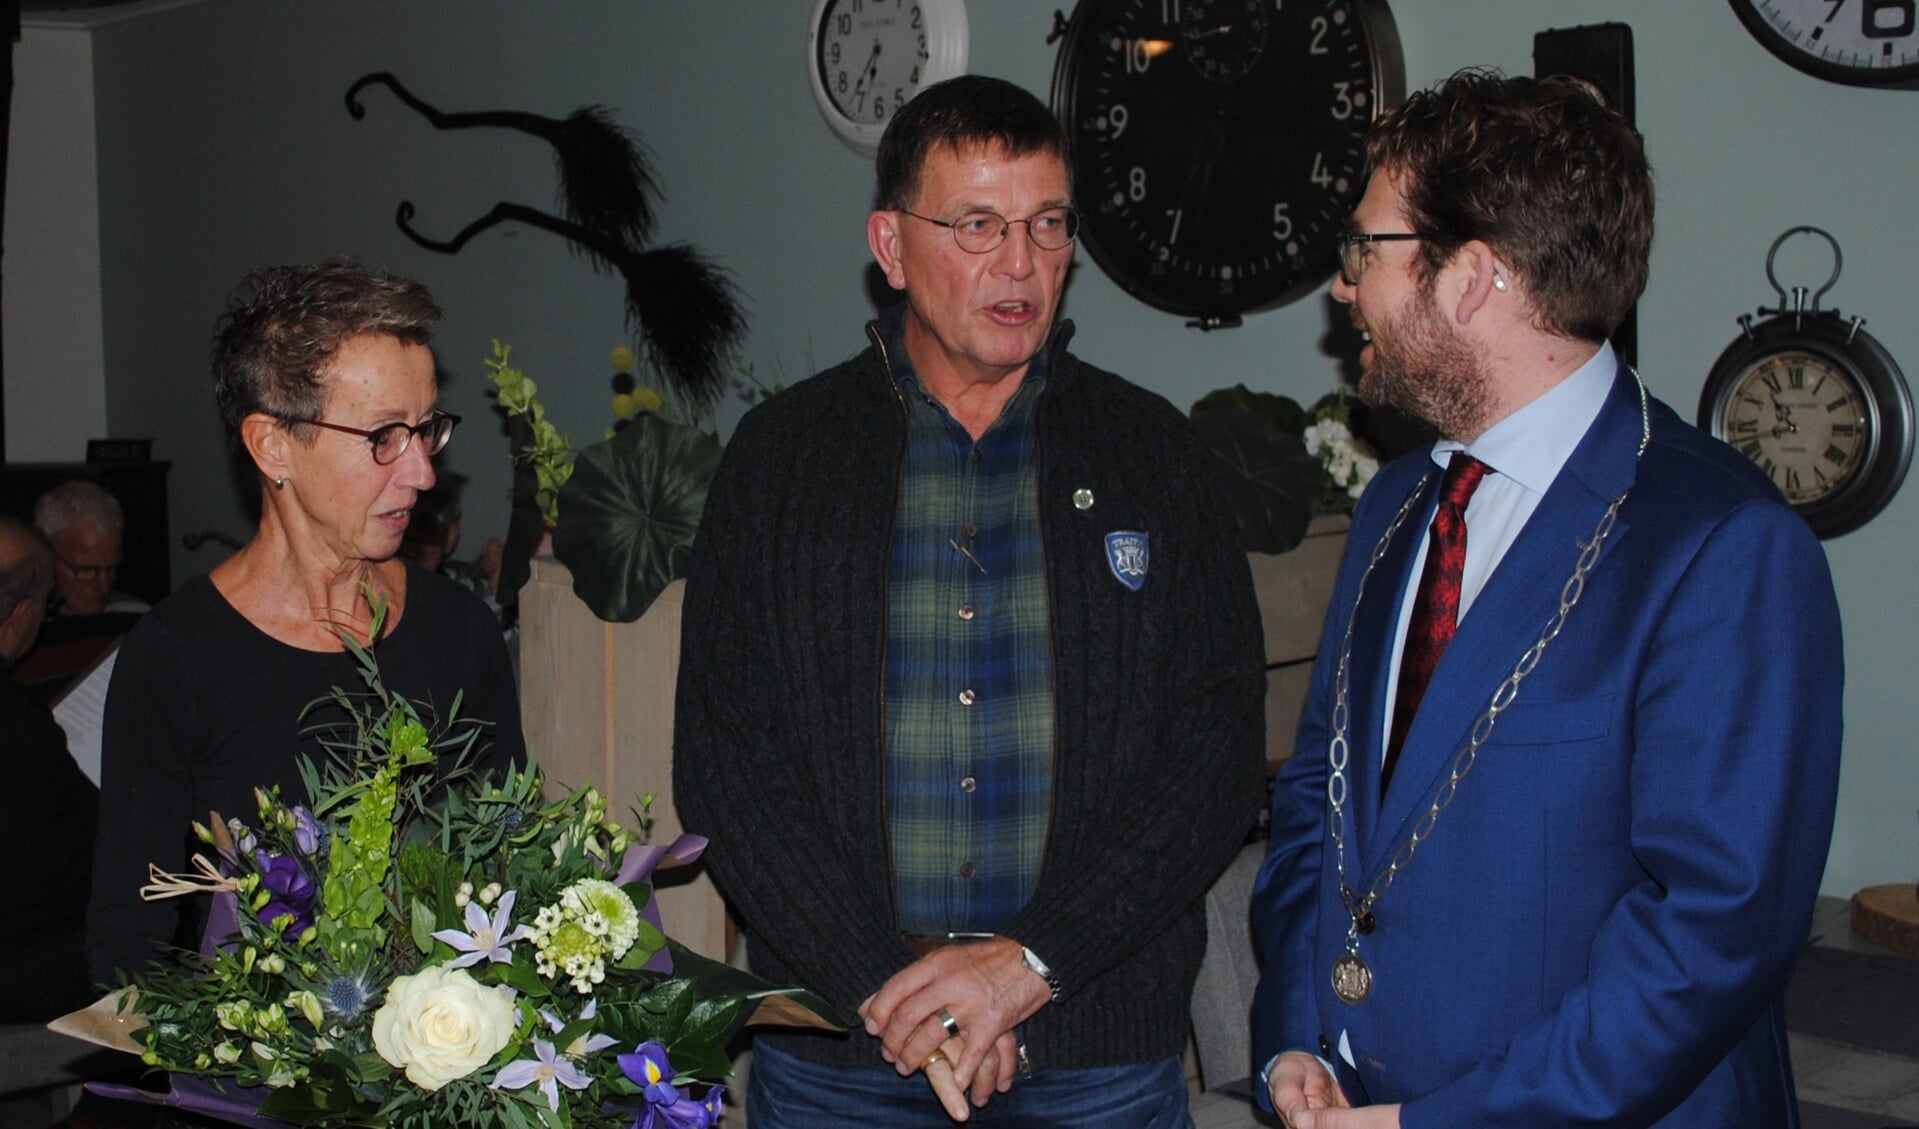 Dinant Beunk ontving uit handen van burgemeester Van ’t Erve een Zilveren Knoop. Foto: Johan Leusink